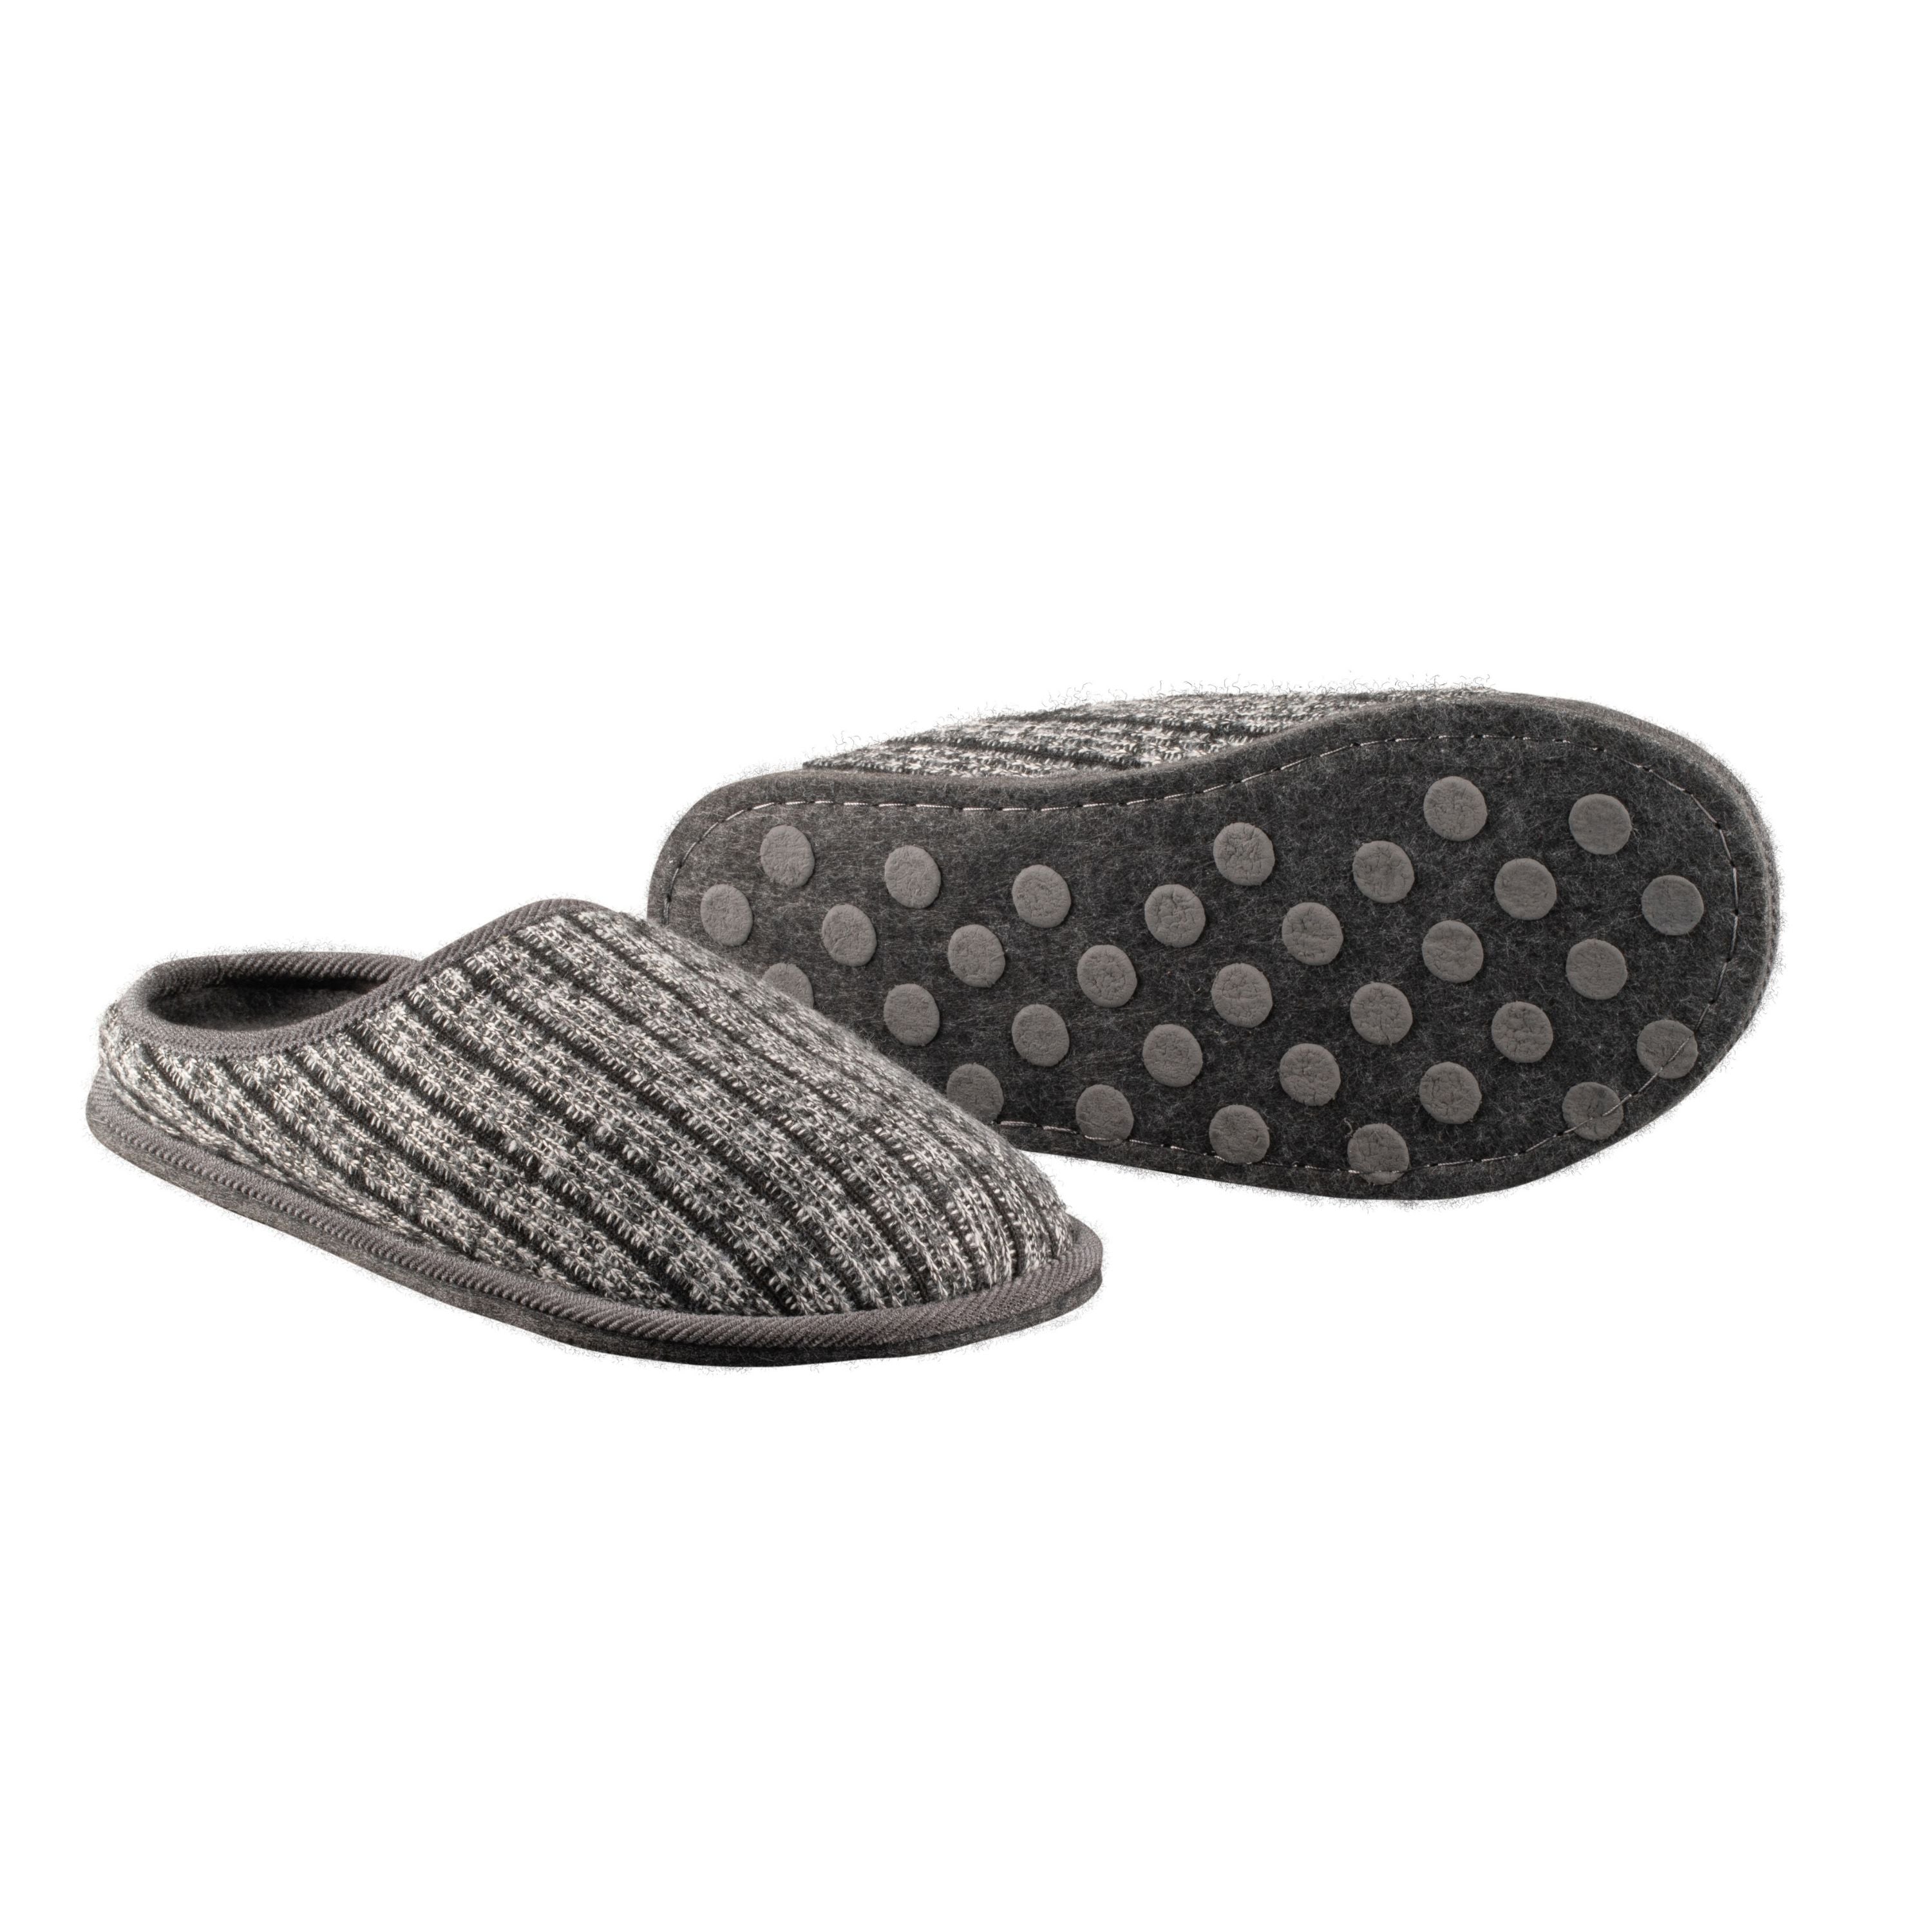 Pantoufles acrylique "Grainau" - Homme||"Grainau" acrylic slippers - Men's